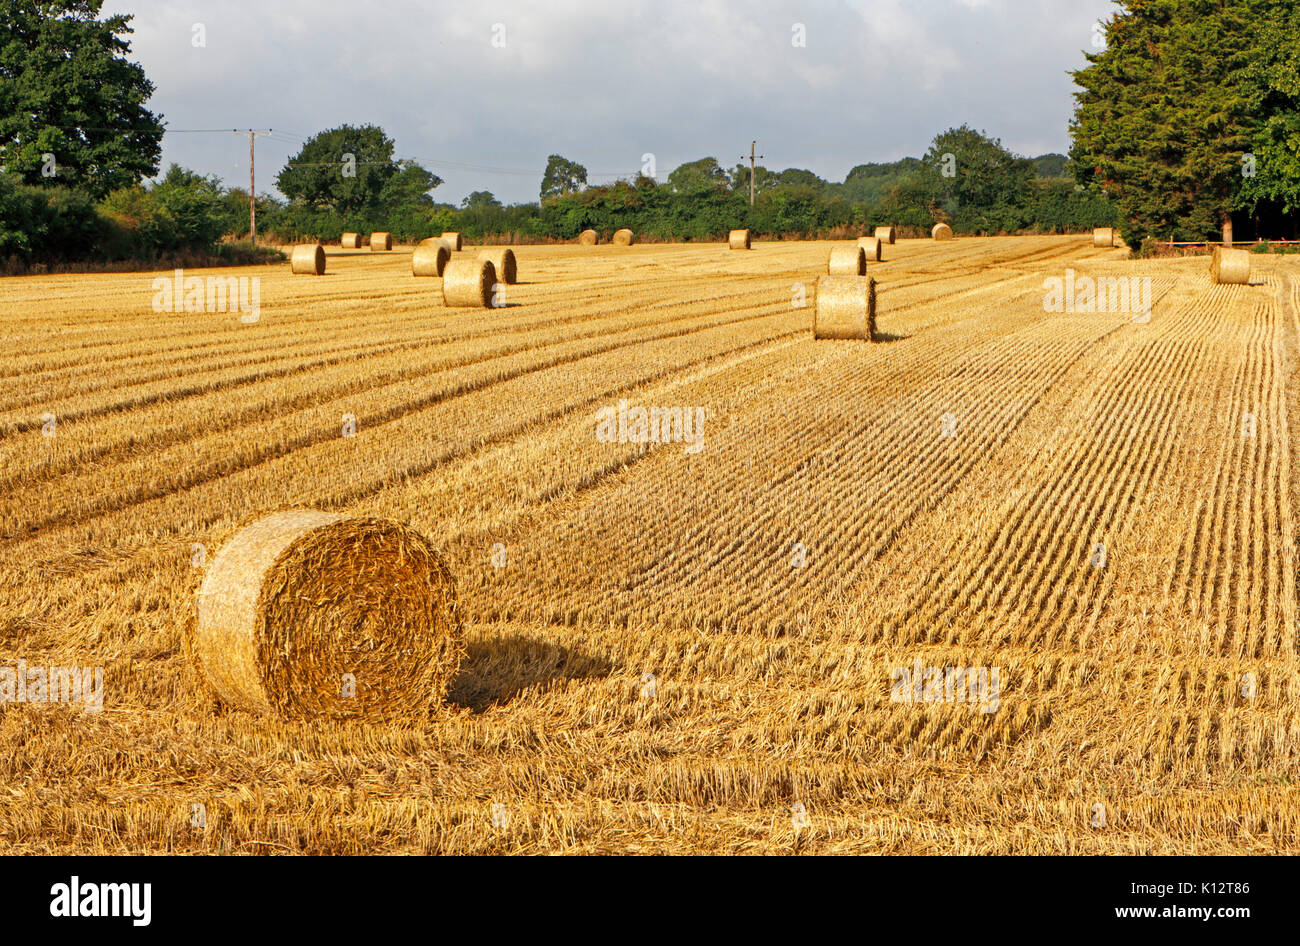 Einem abgeernteten Feld mit runden Strohballen in goldenem Licht im Grünen an tuttington, Norfolk, England, Vereinigtes Königreich. Stockfoto